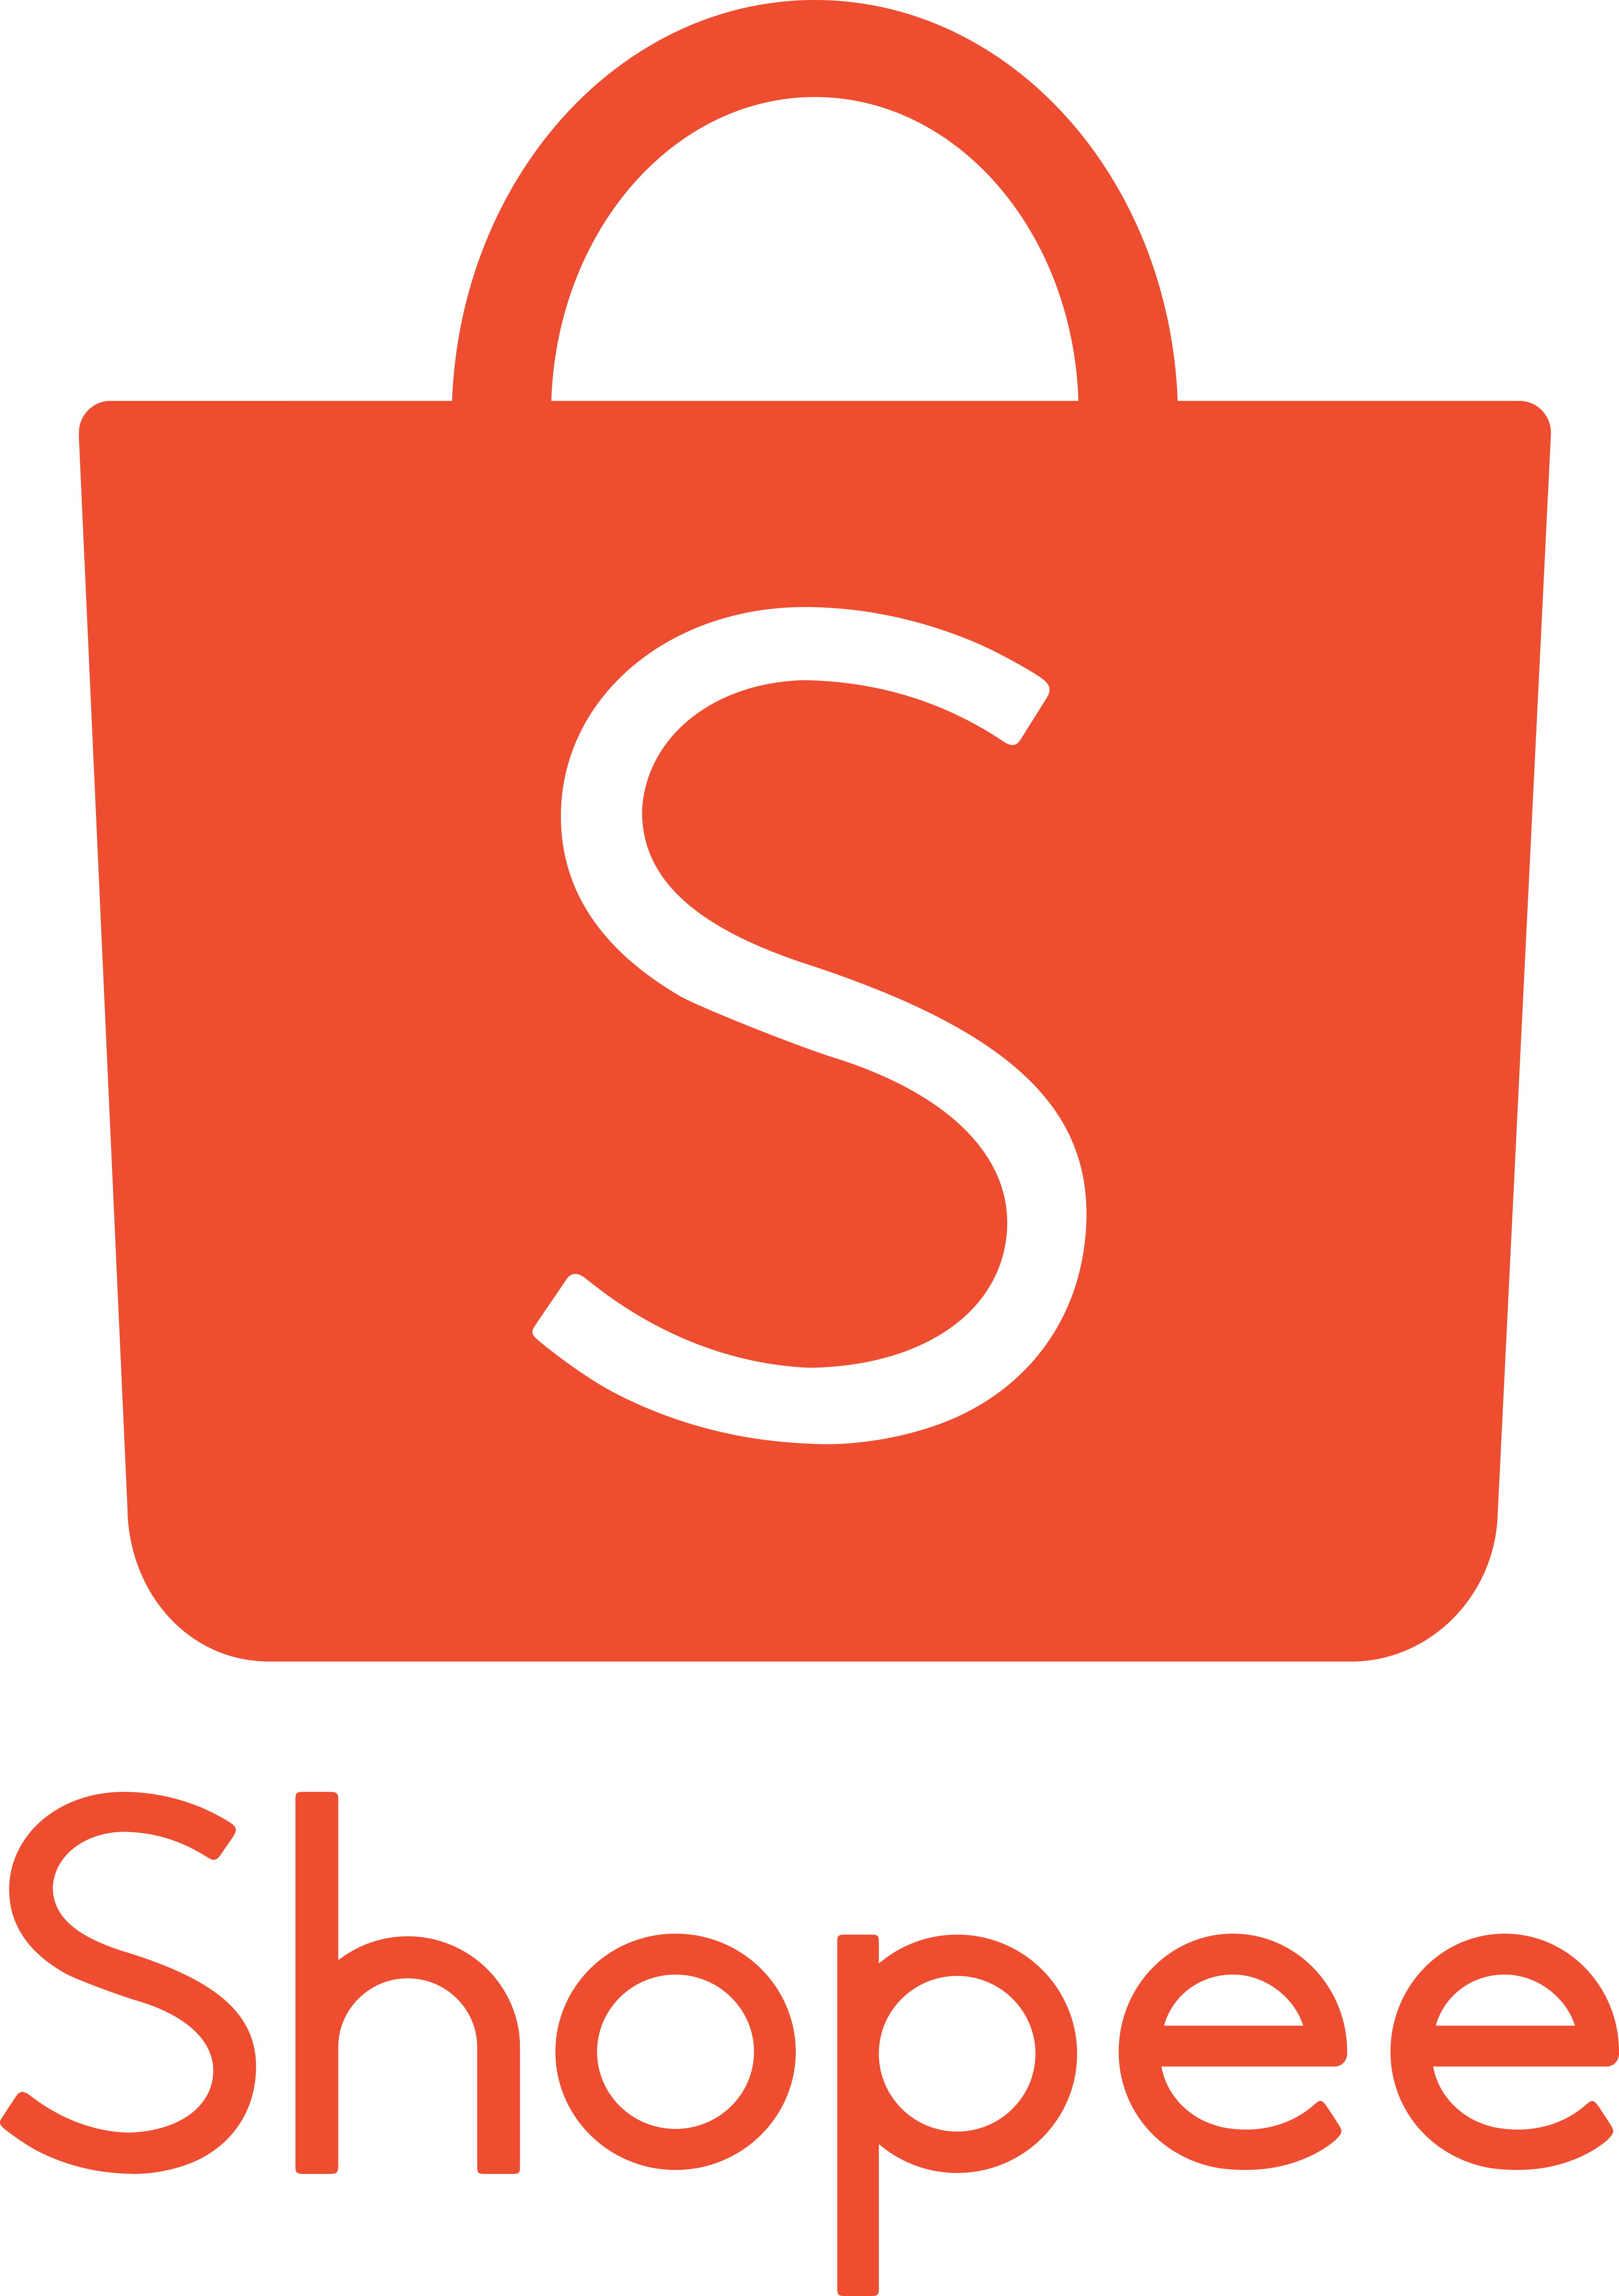 shopee logo 1 - Shopee Logo